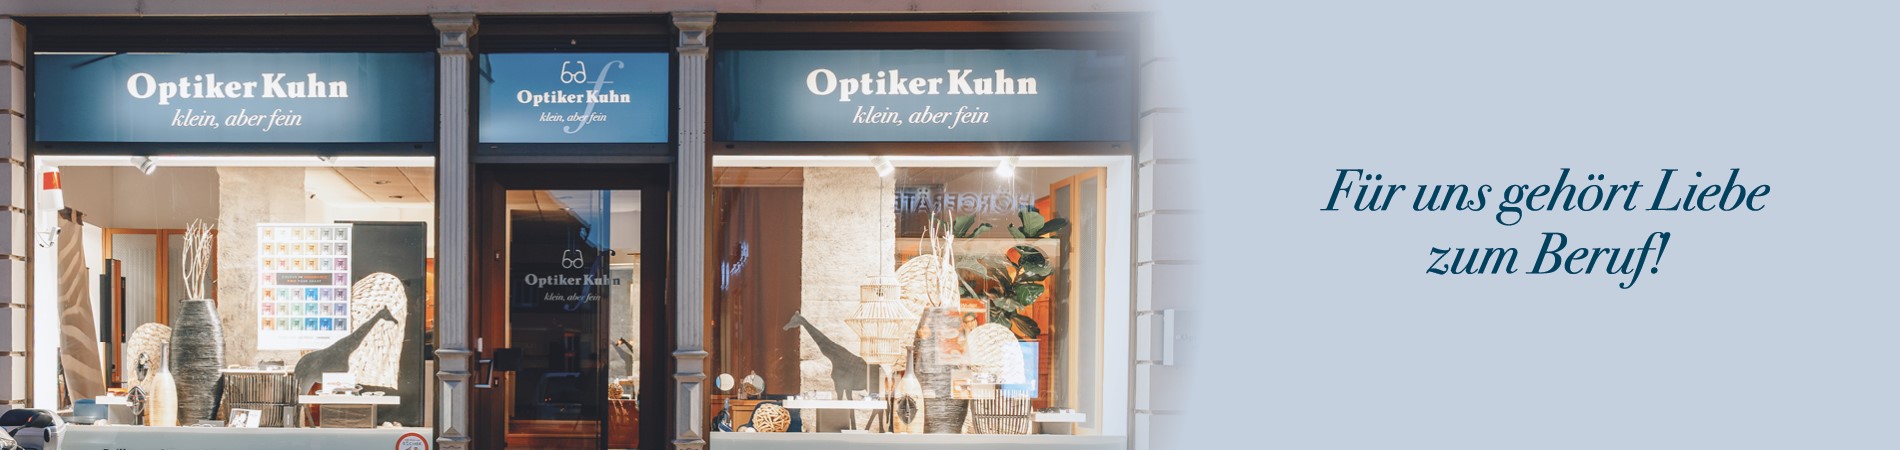 Optiker Kuhn Ladengeschäft